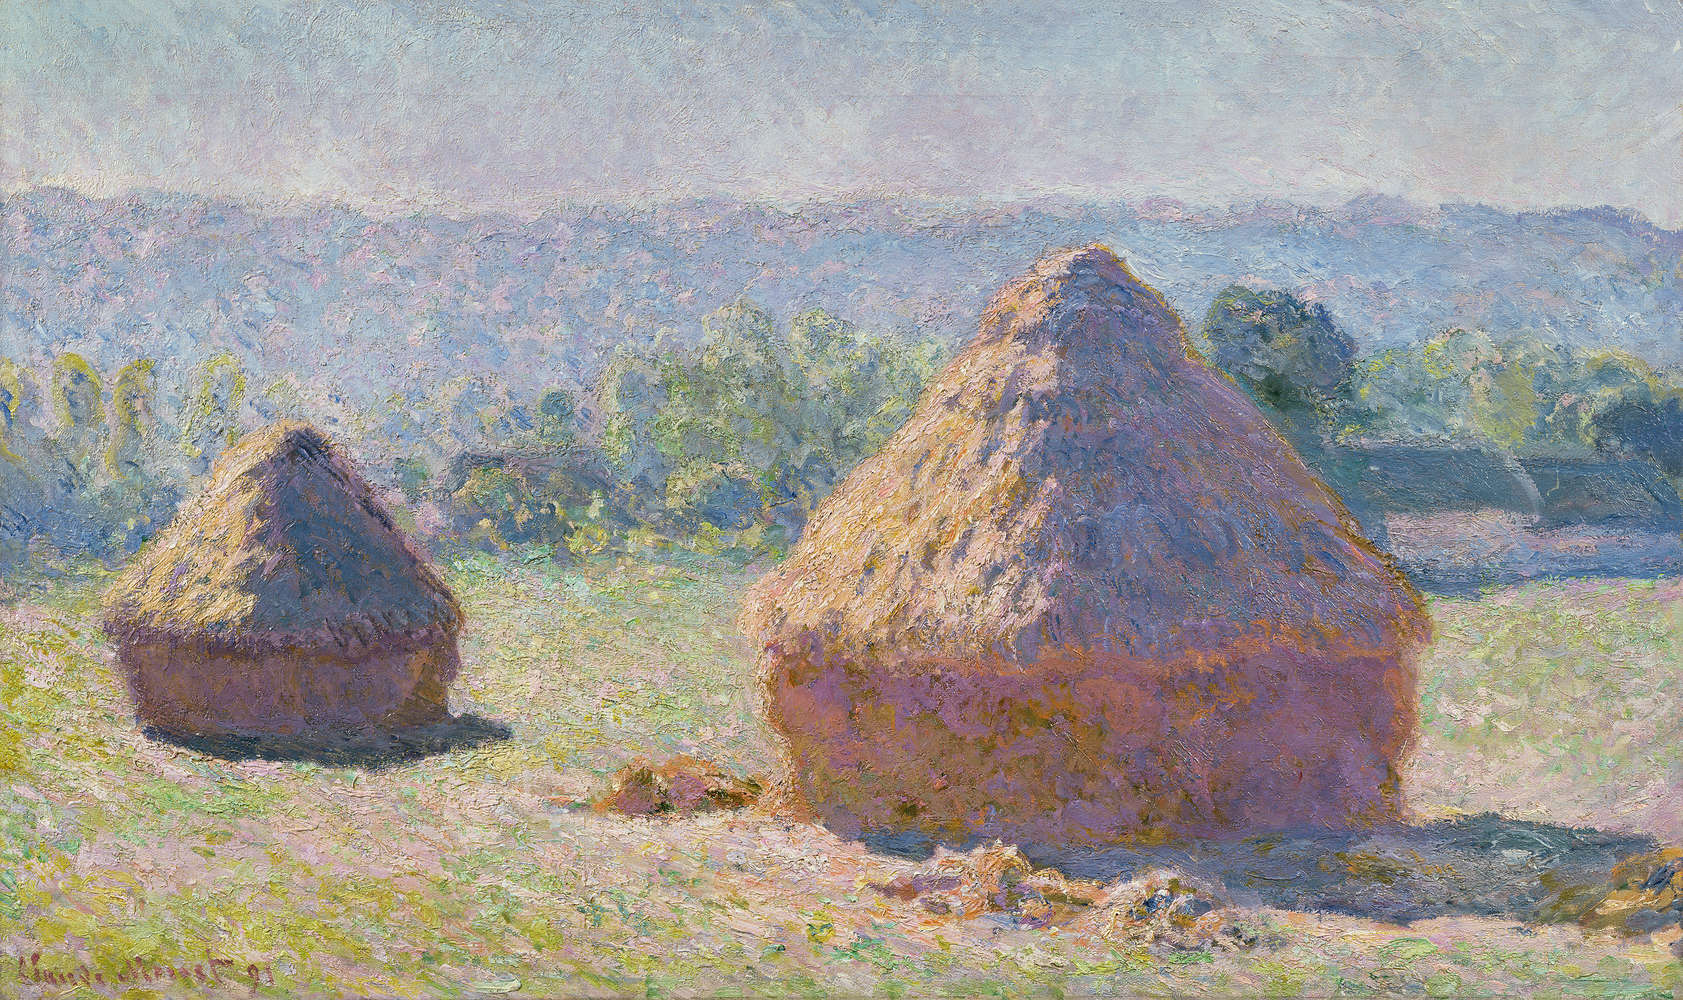             Fotomurali "Fienile di paglia alla fine dell'estate" di Claude Monet
        